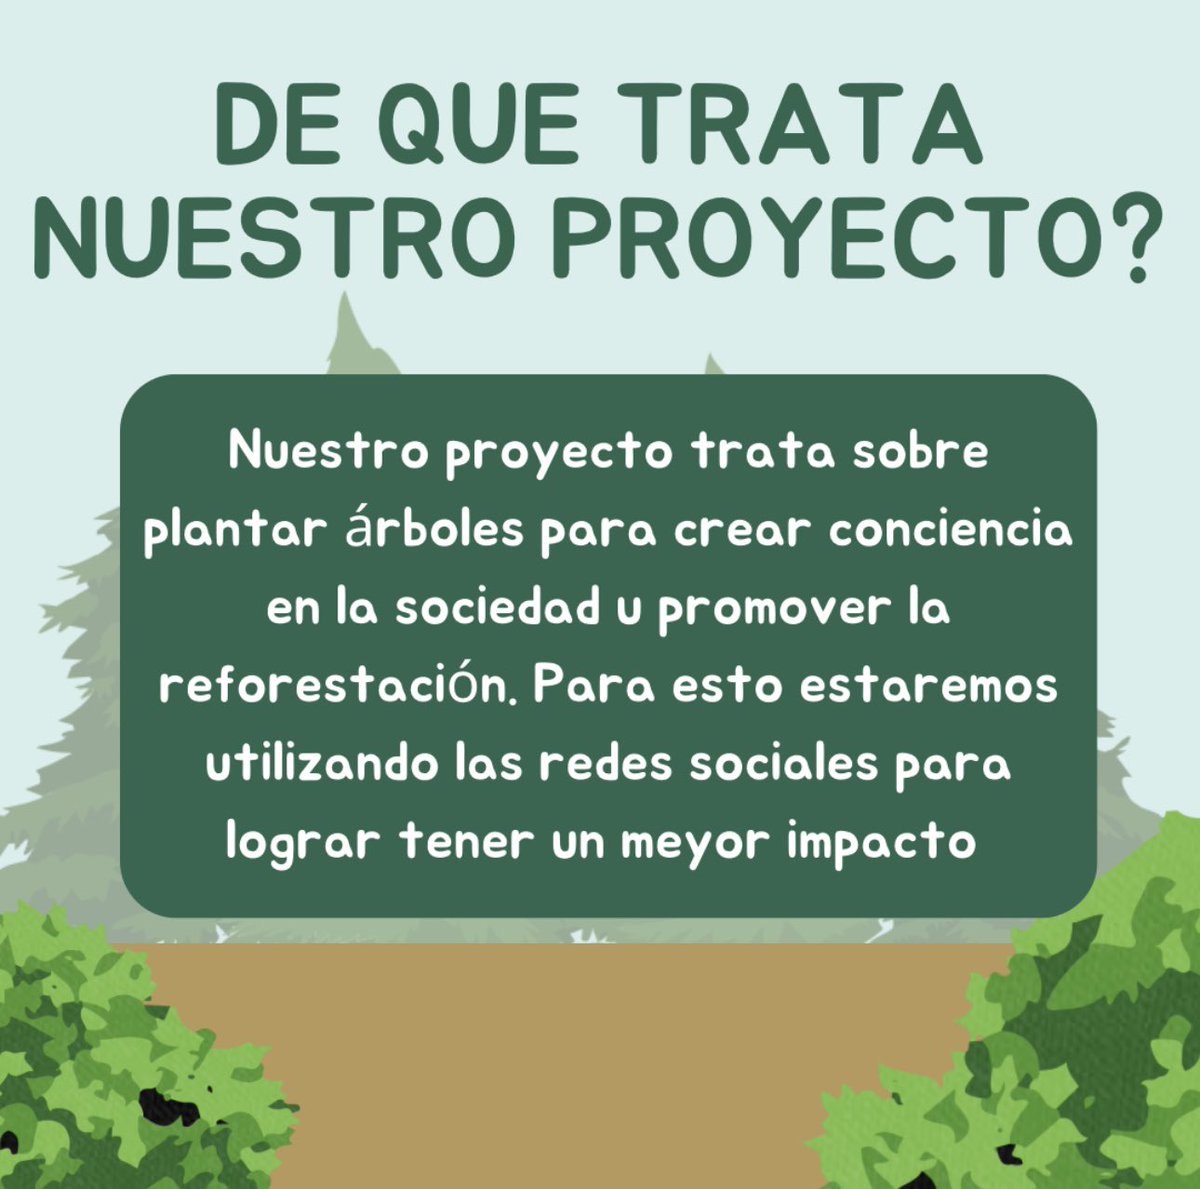 _reforestacion tweet picture